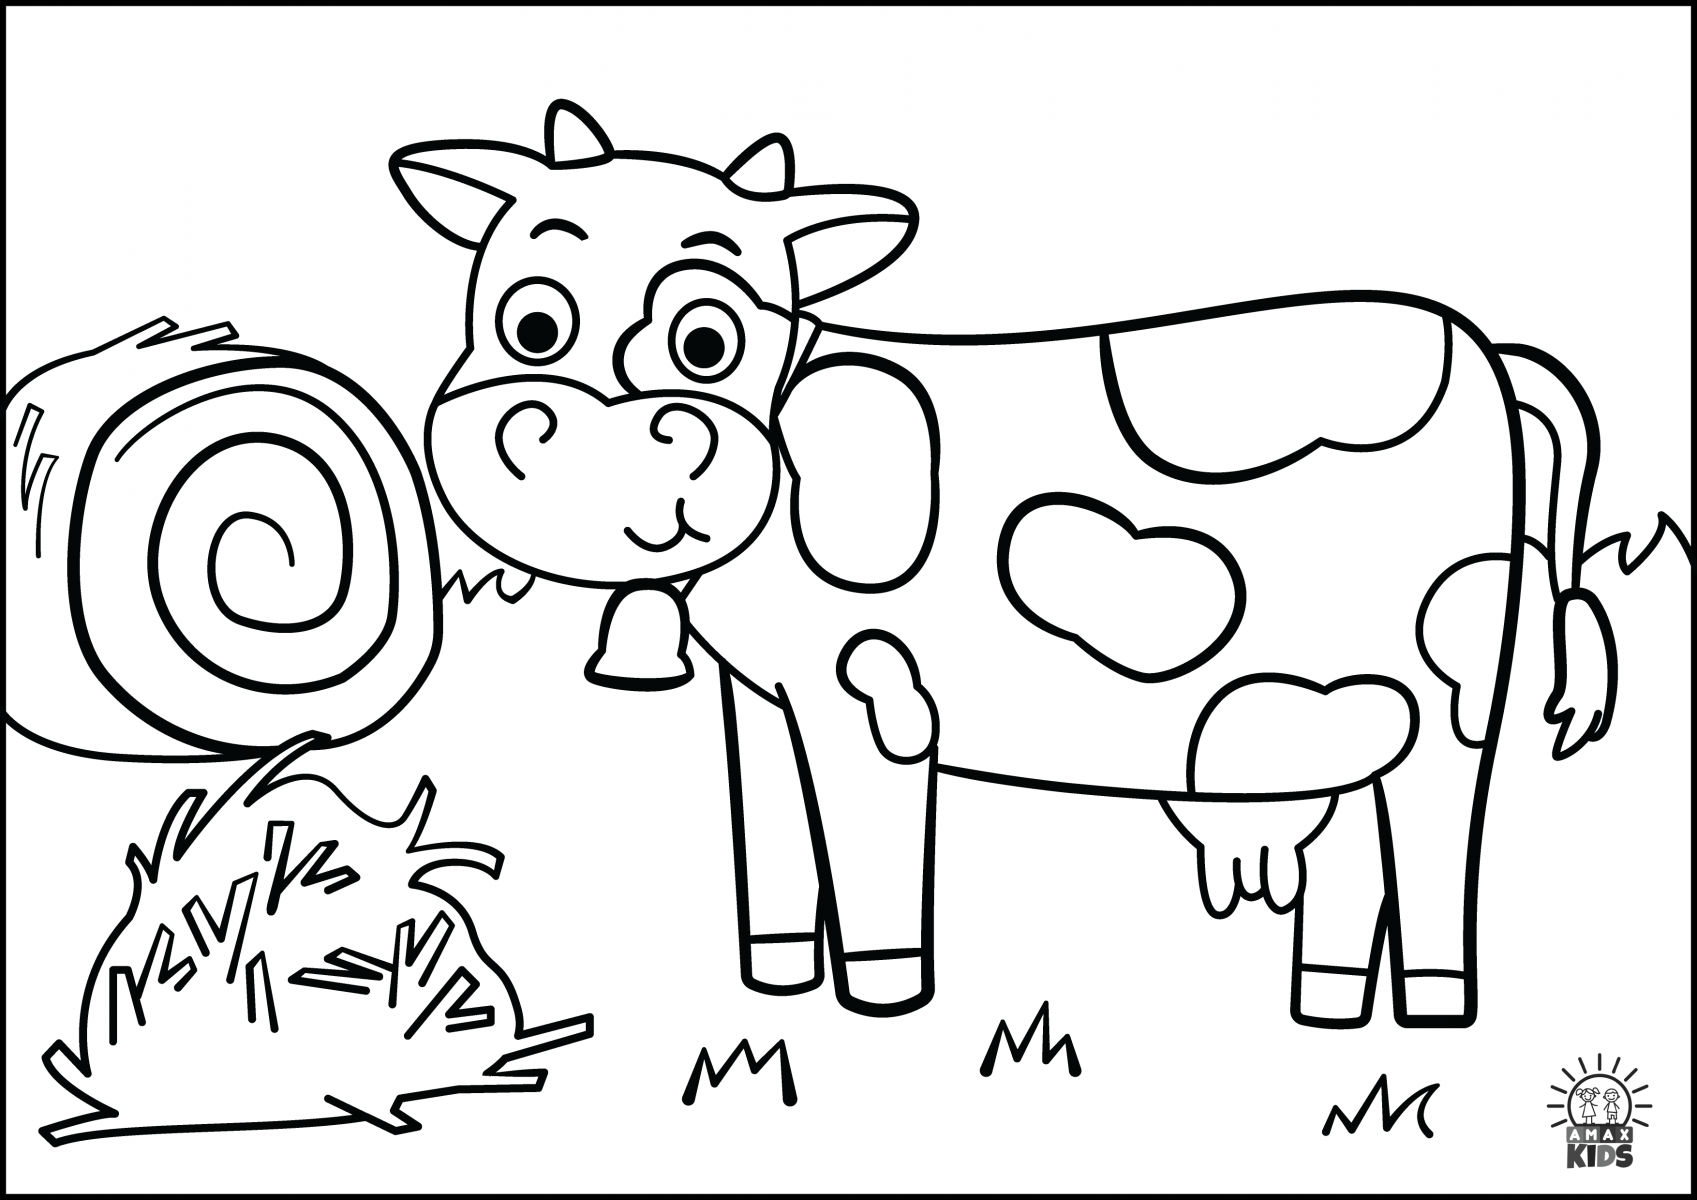 Раскраски для детей 3 года коровы. Раскраска корова для детей 3-4 лет. Корова раскраска для детей. Раскраска корова для малышей 2-3 лет. Корова раскраска для детей 2-3 лет.